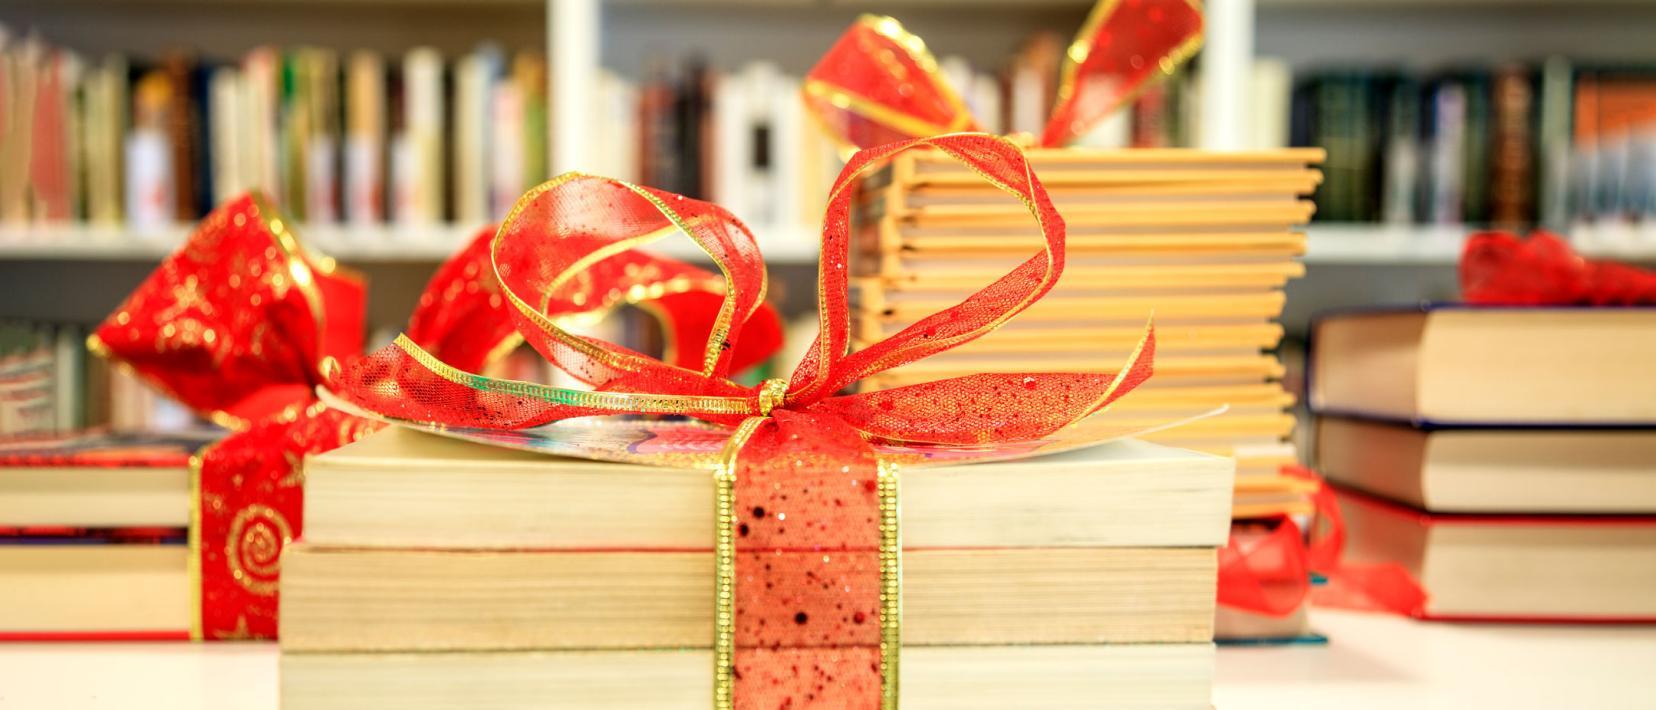 Bücher mit rotem Weihnachtsband zusammengebunden liegen auf einem Tisch vor einer Bücherwand.